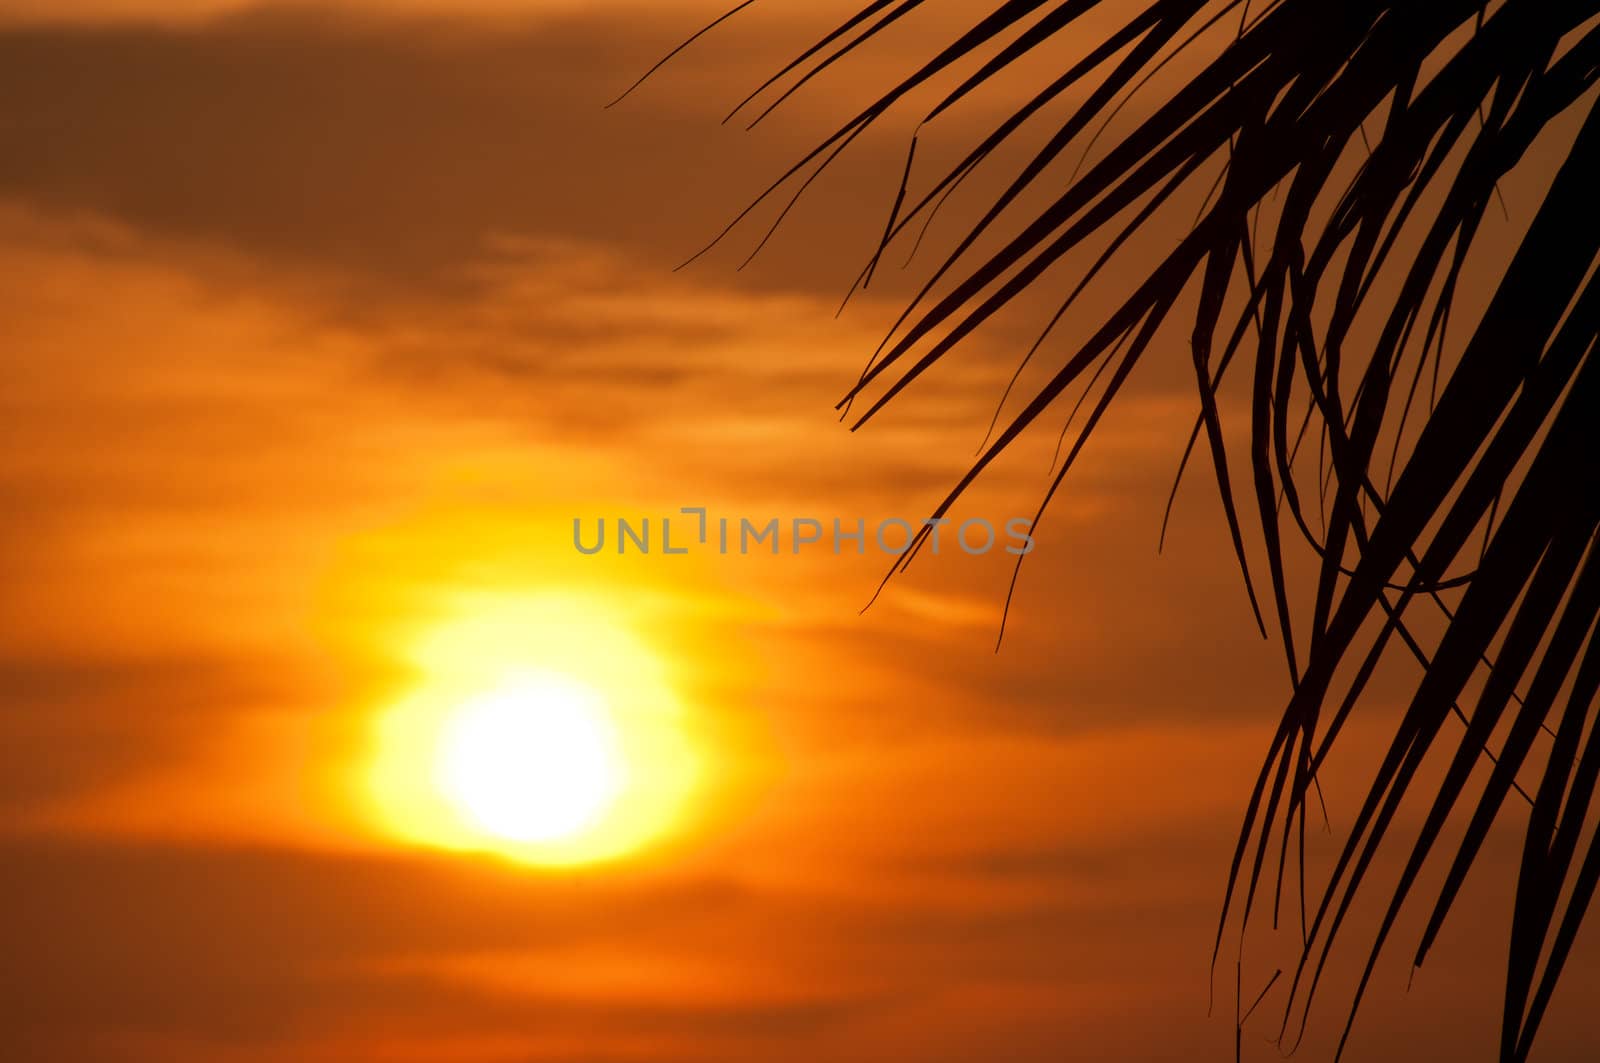 Sunset with palm. Ko Pukhet island, Thailand